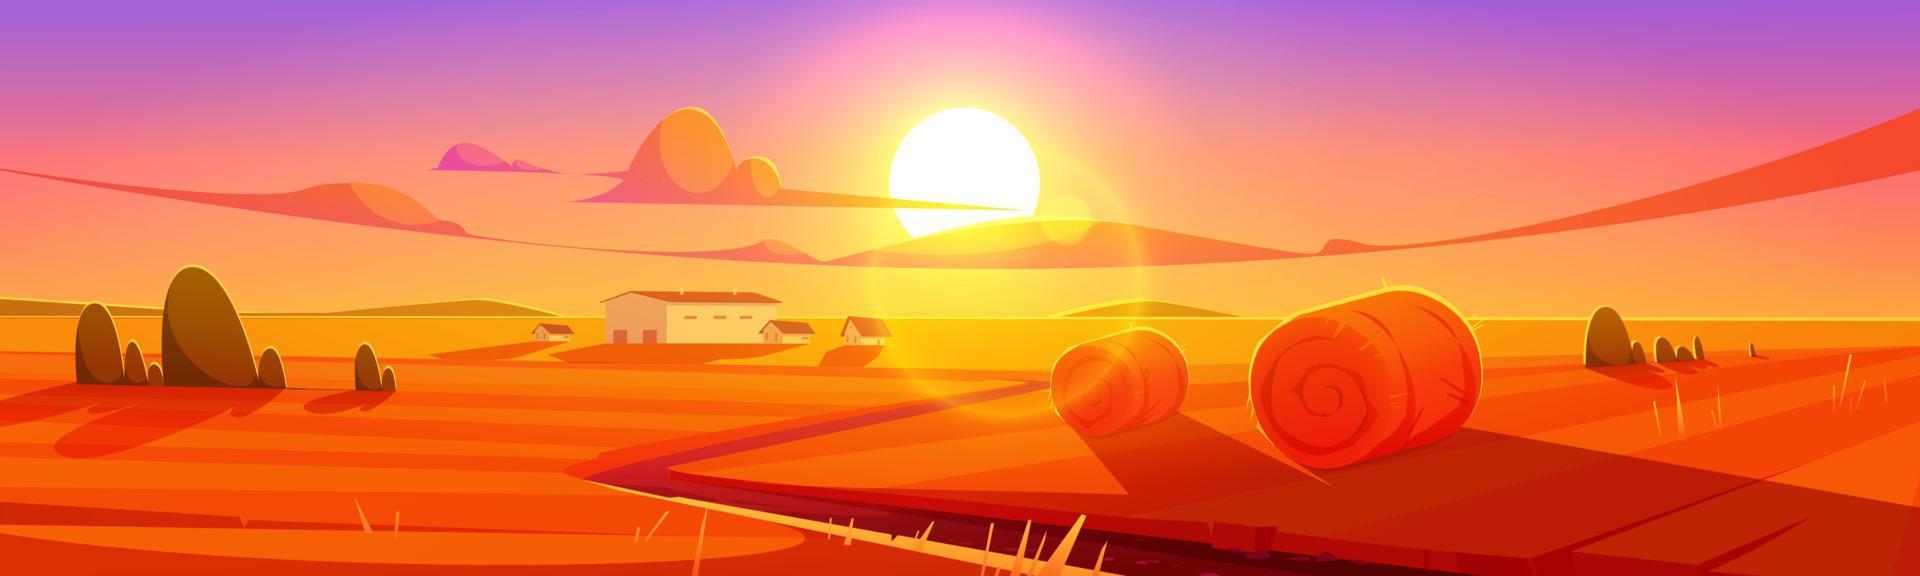 puesta de sol paisaje paisaje rural, campo con heno vector